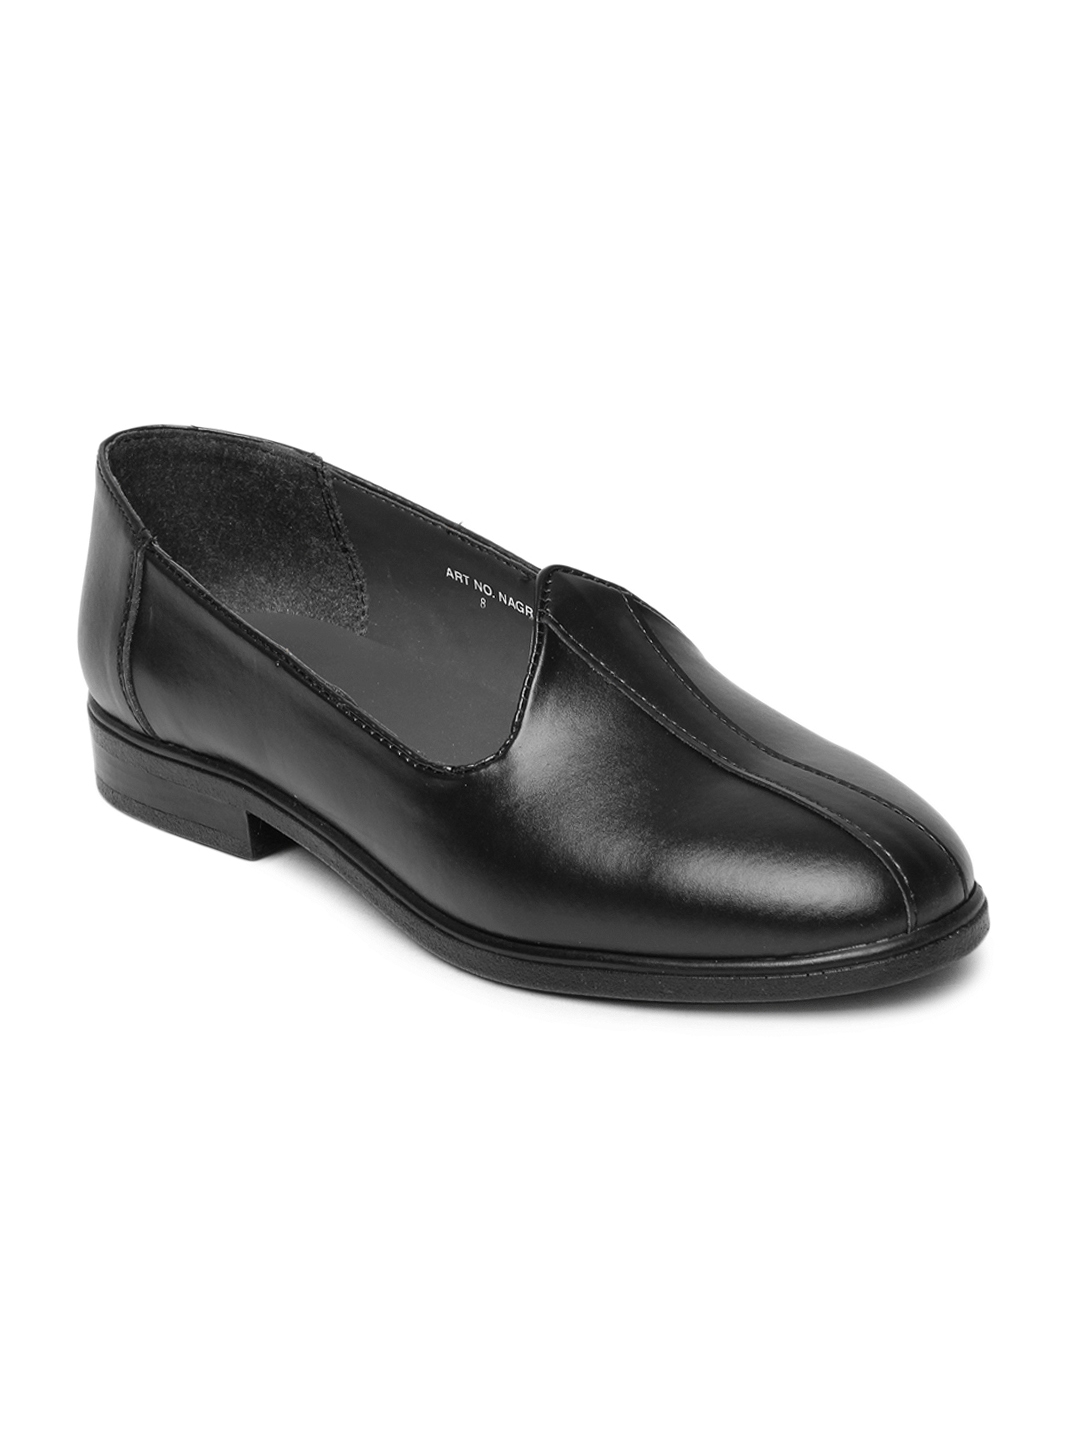 Fortune Men Formal Shoes 8ef387612eb71a1d0d989689dfd21396 images